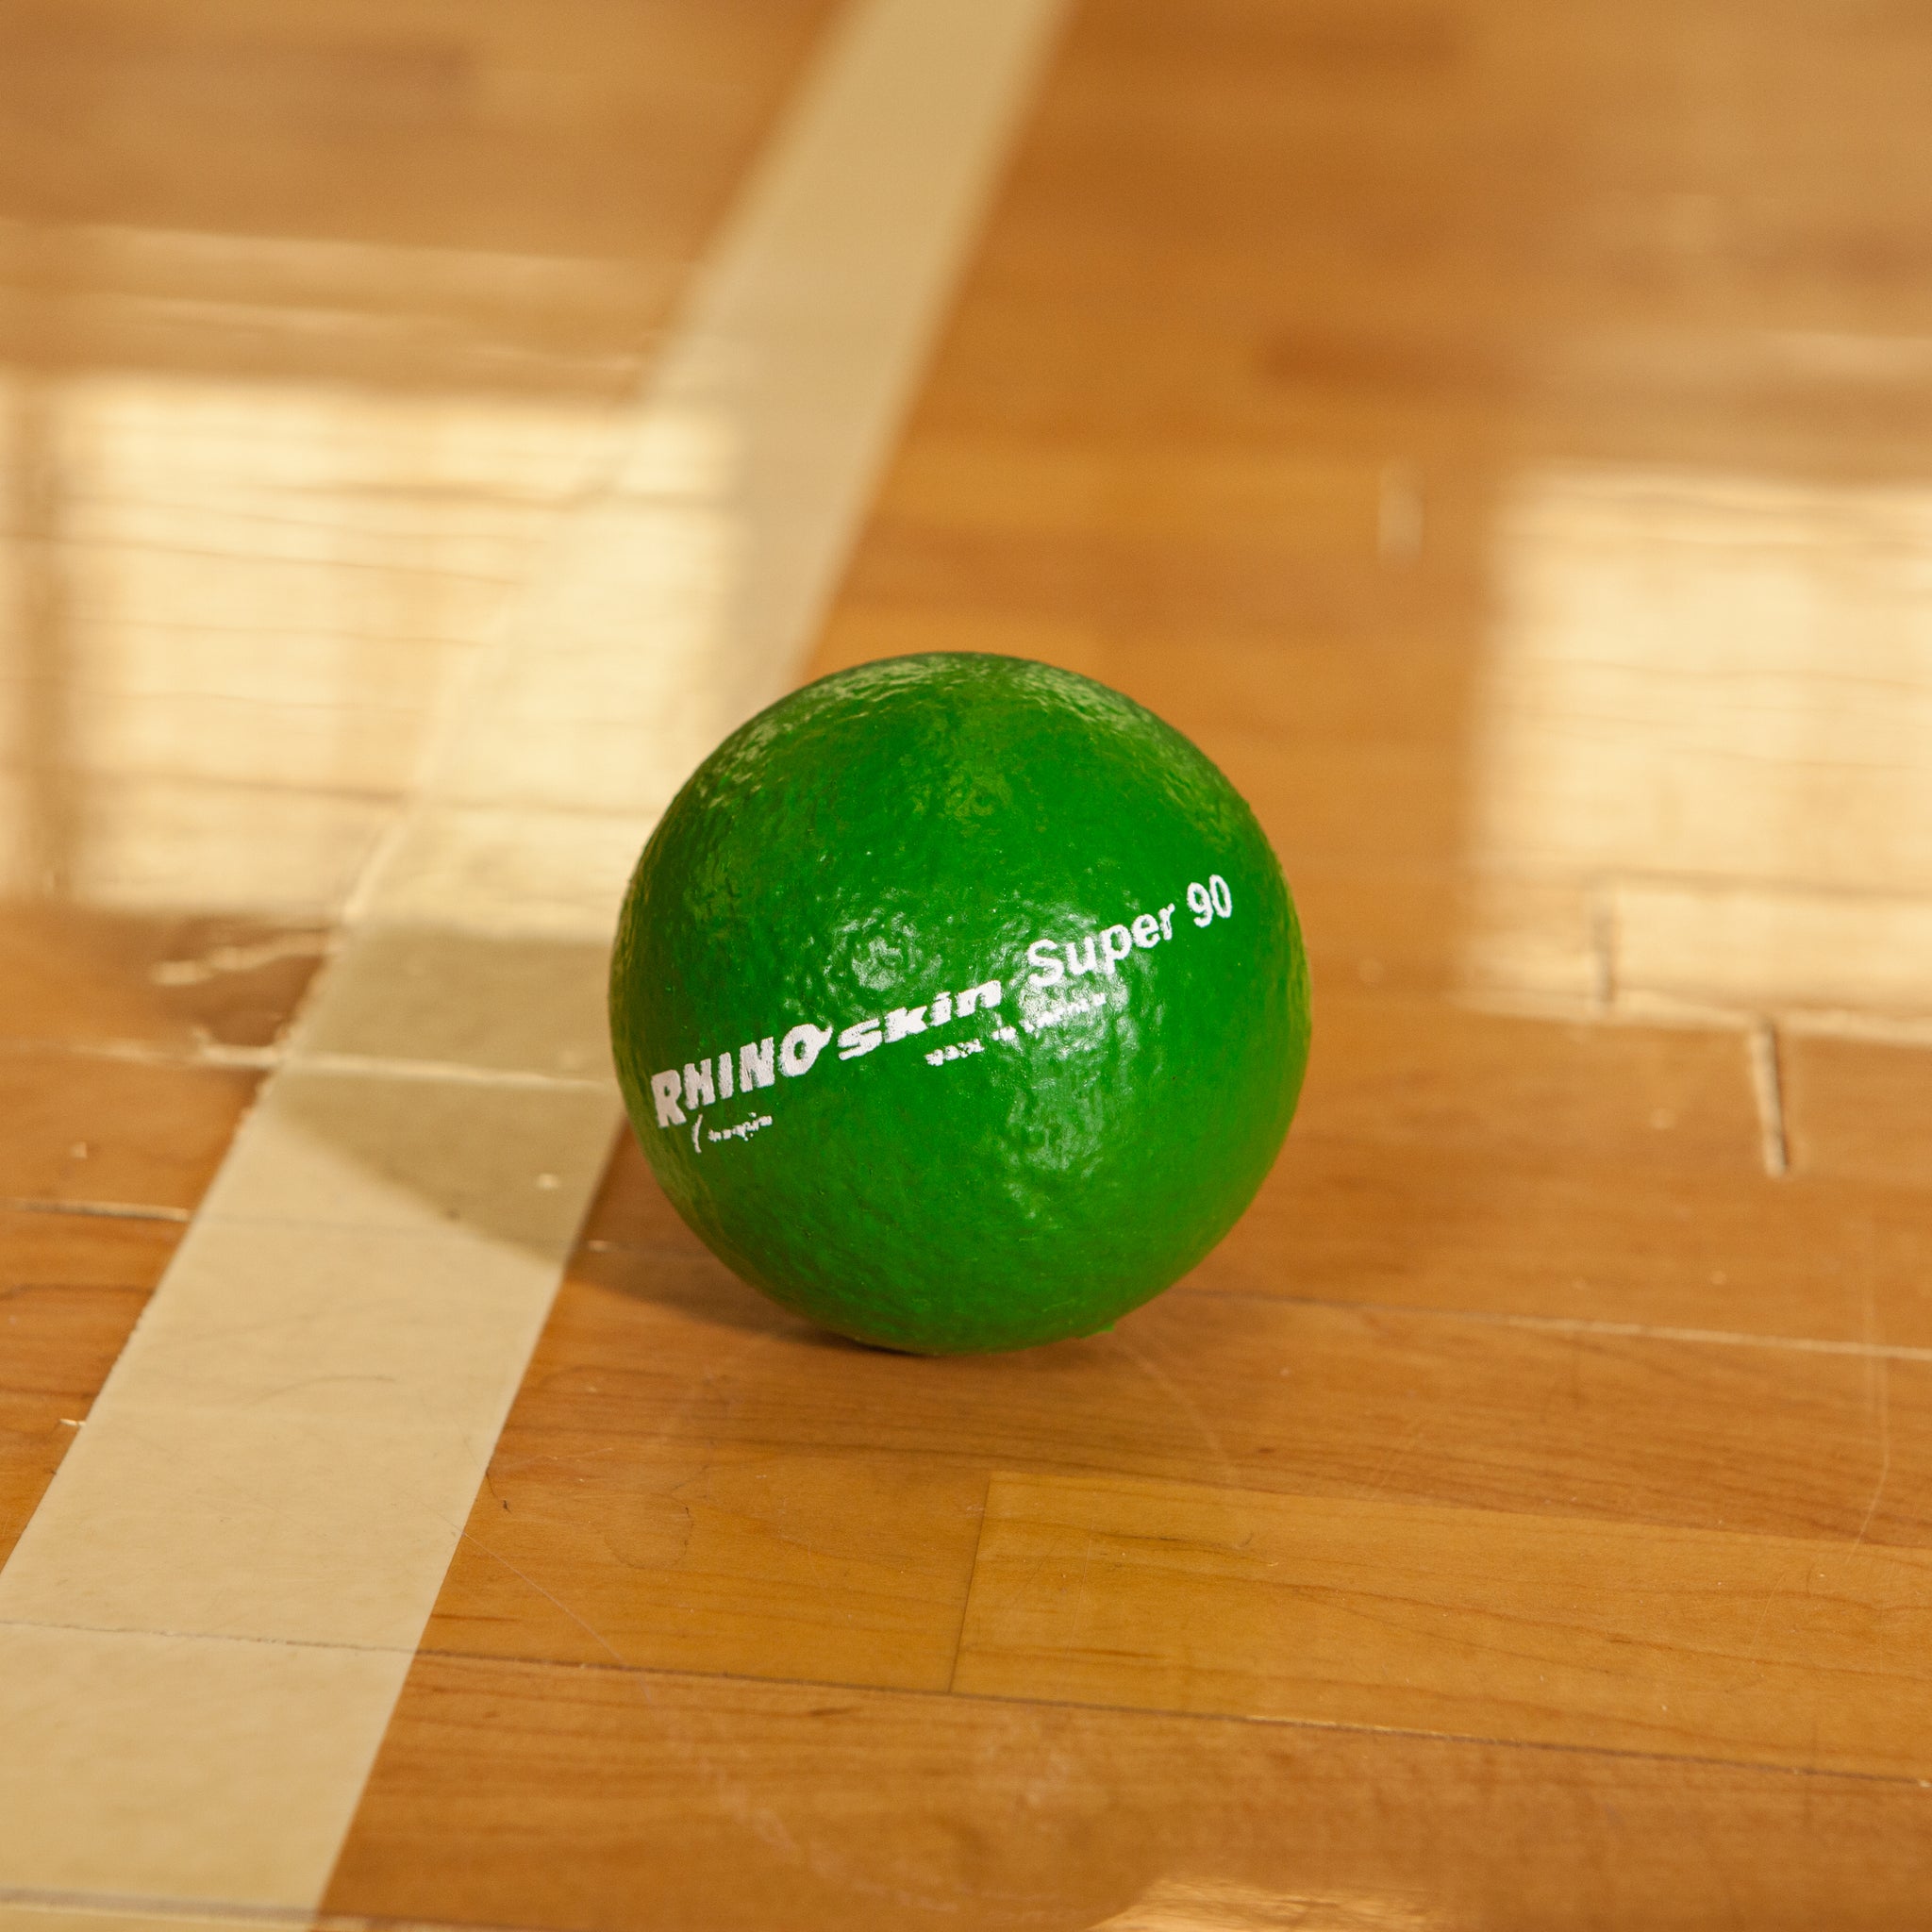 Sportime Ultrafoam NoBounce Balls, 3.5 inch, Set of 6